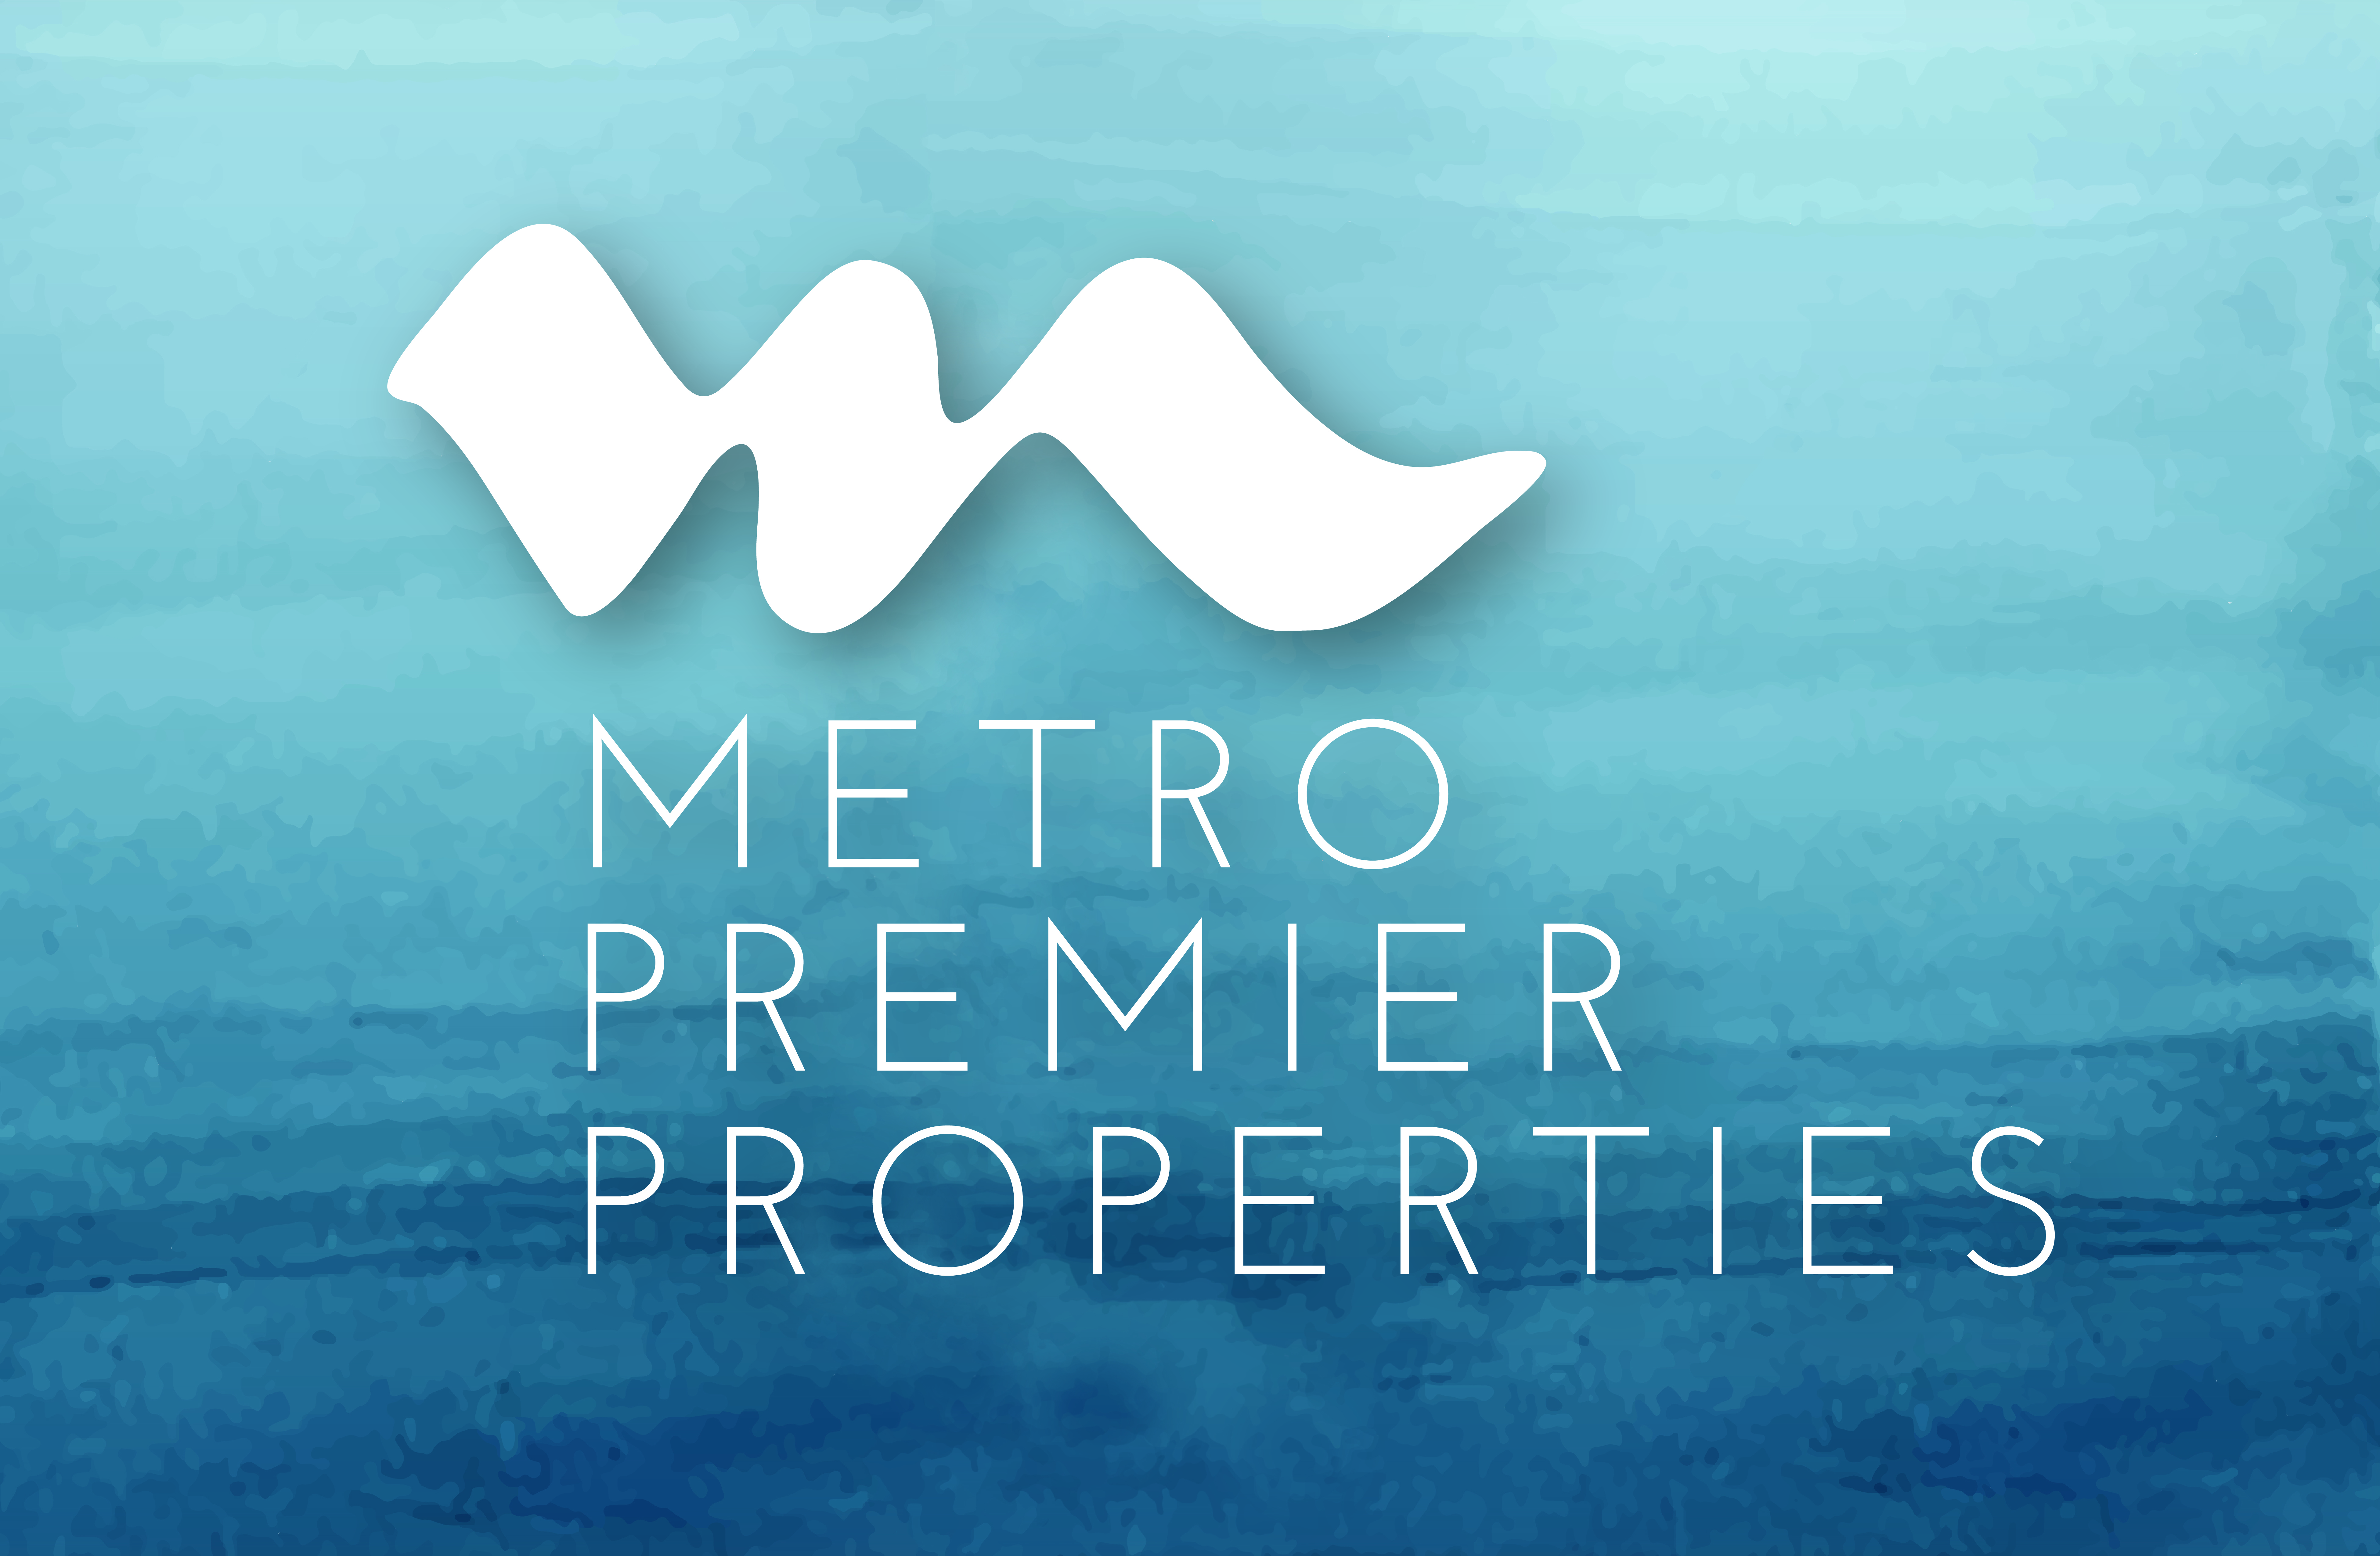 Metro Premier Properties